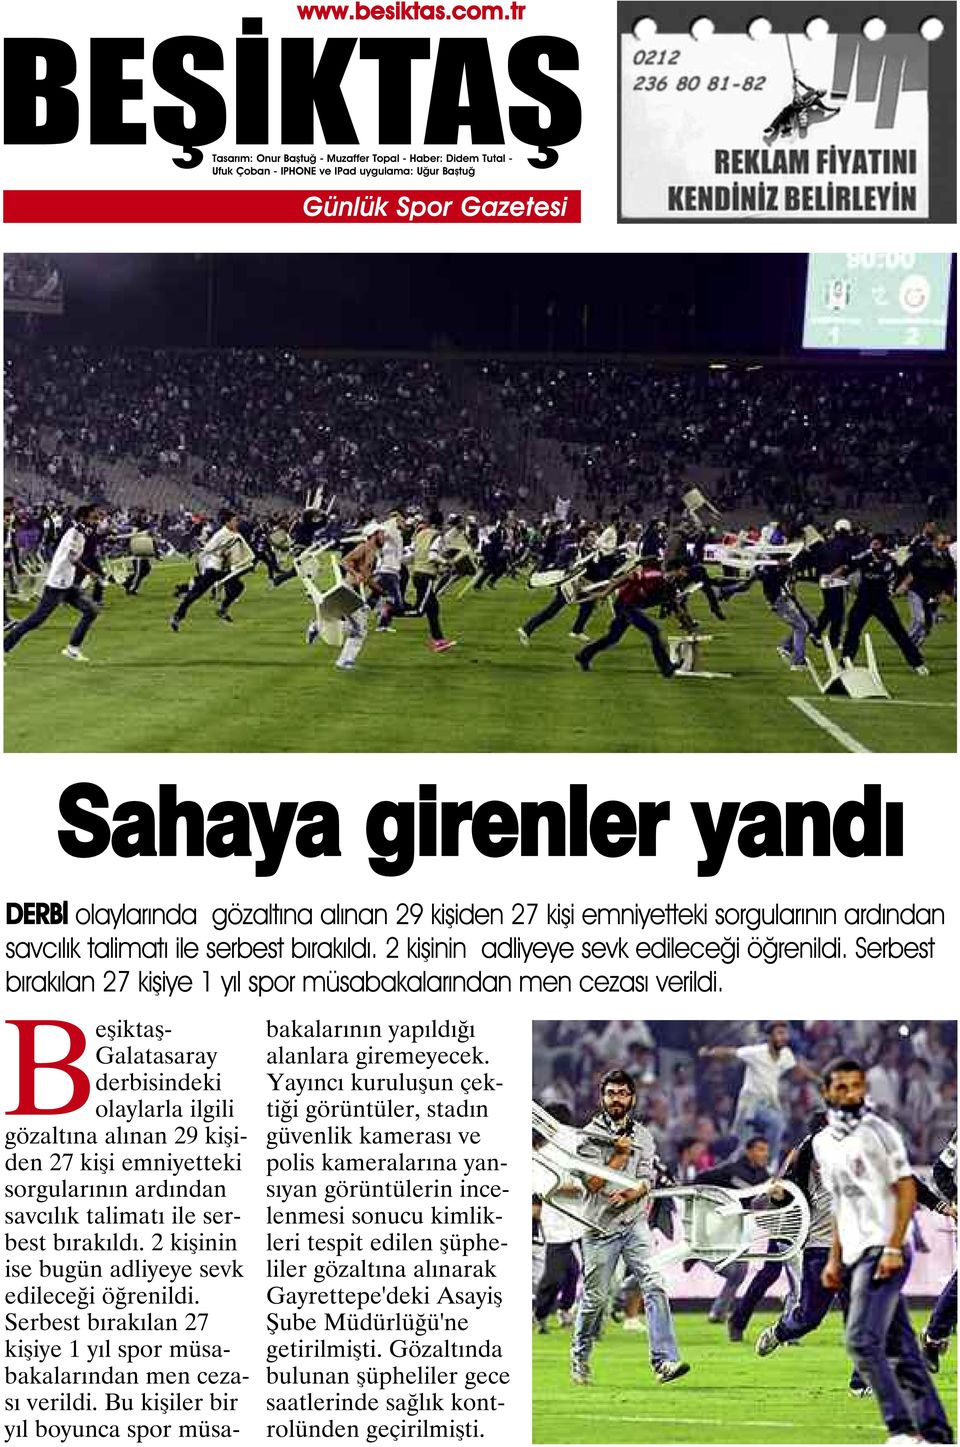 Beşiktaş- Galatasaray derbisindeki olaylarla ilgili gözaltına alınan 29 kişiden 27 kişi emniyetteki sorgularının ardından savcılık talimatı ile serbest bırakıldı.